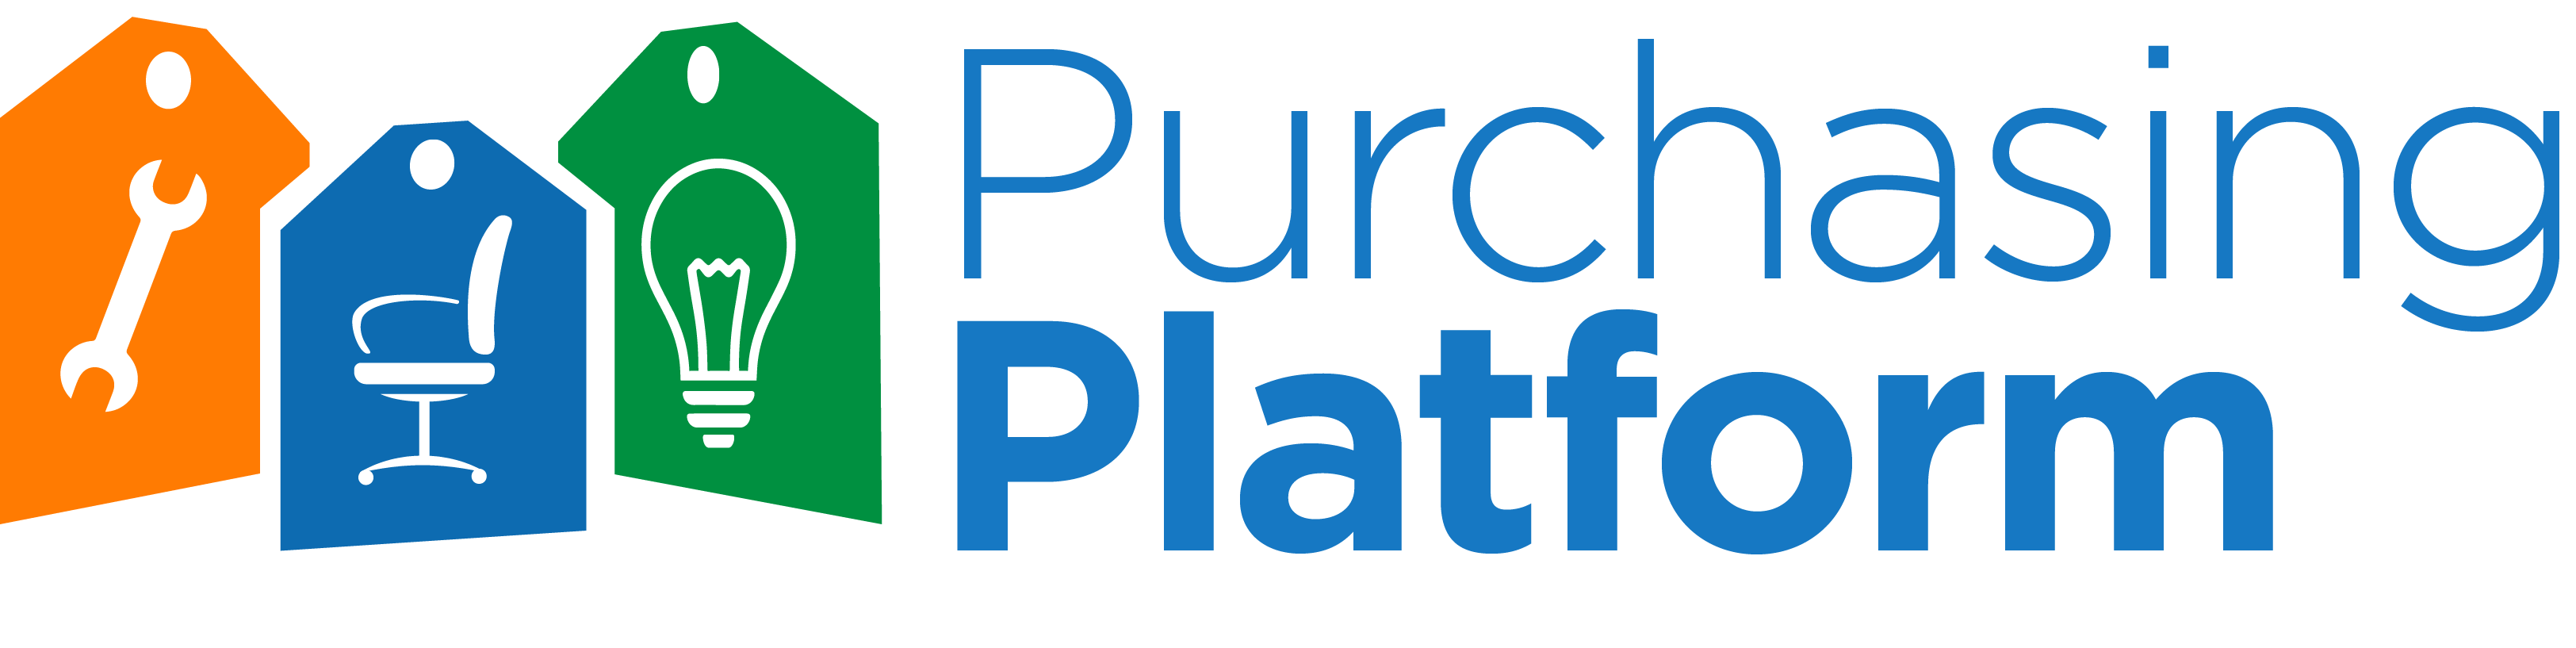 Pp logo